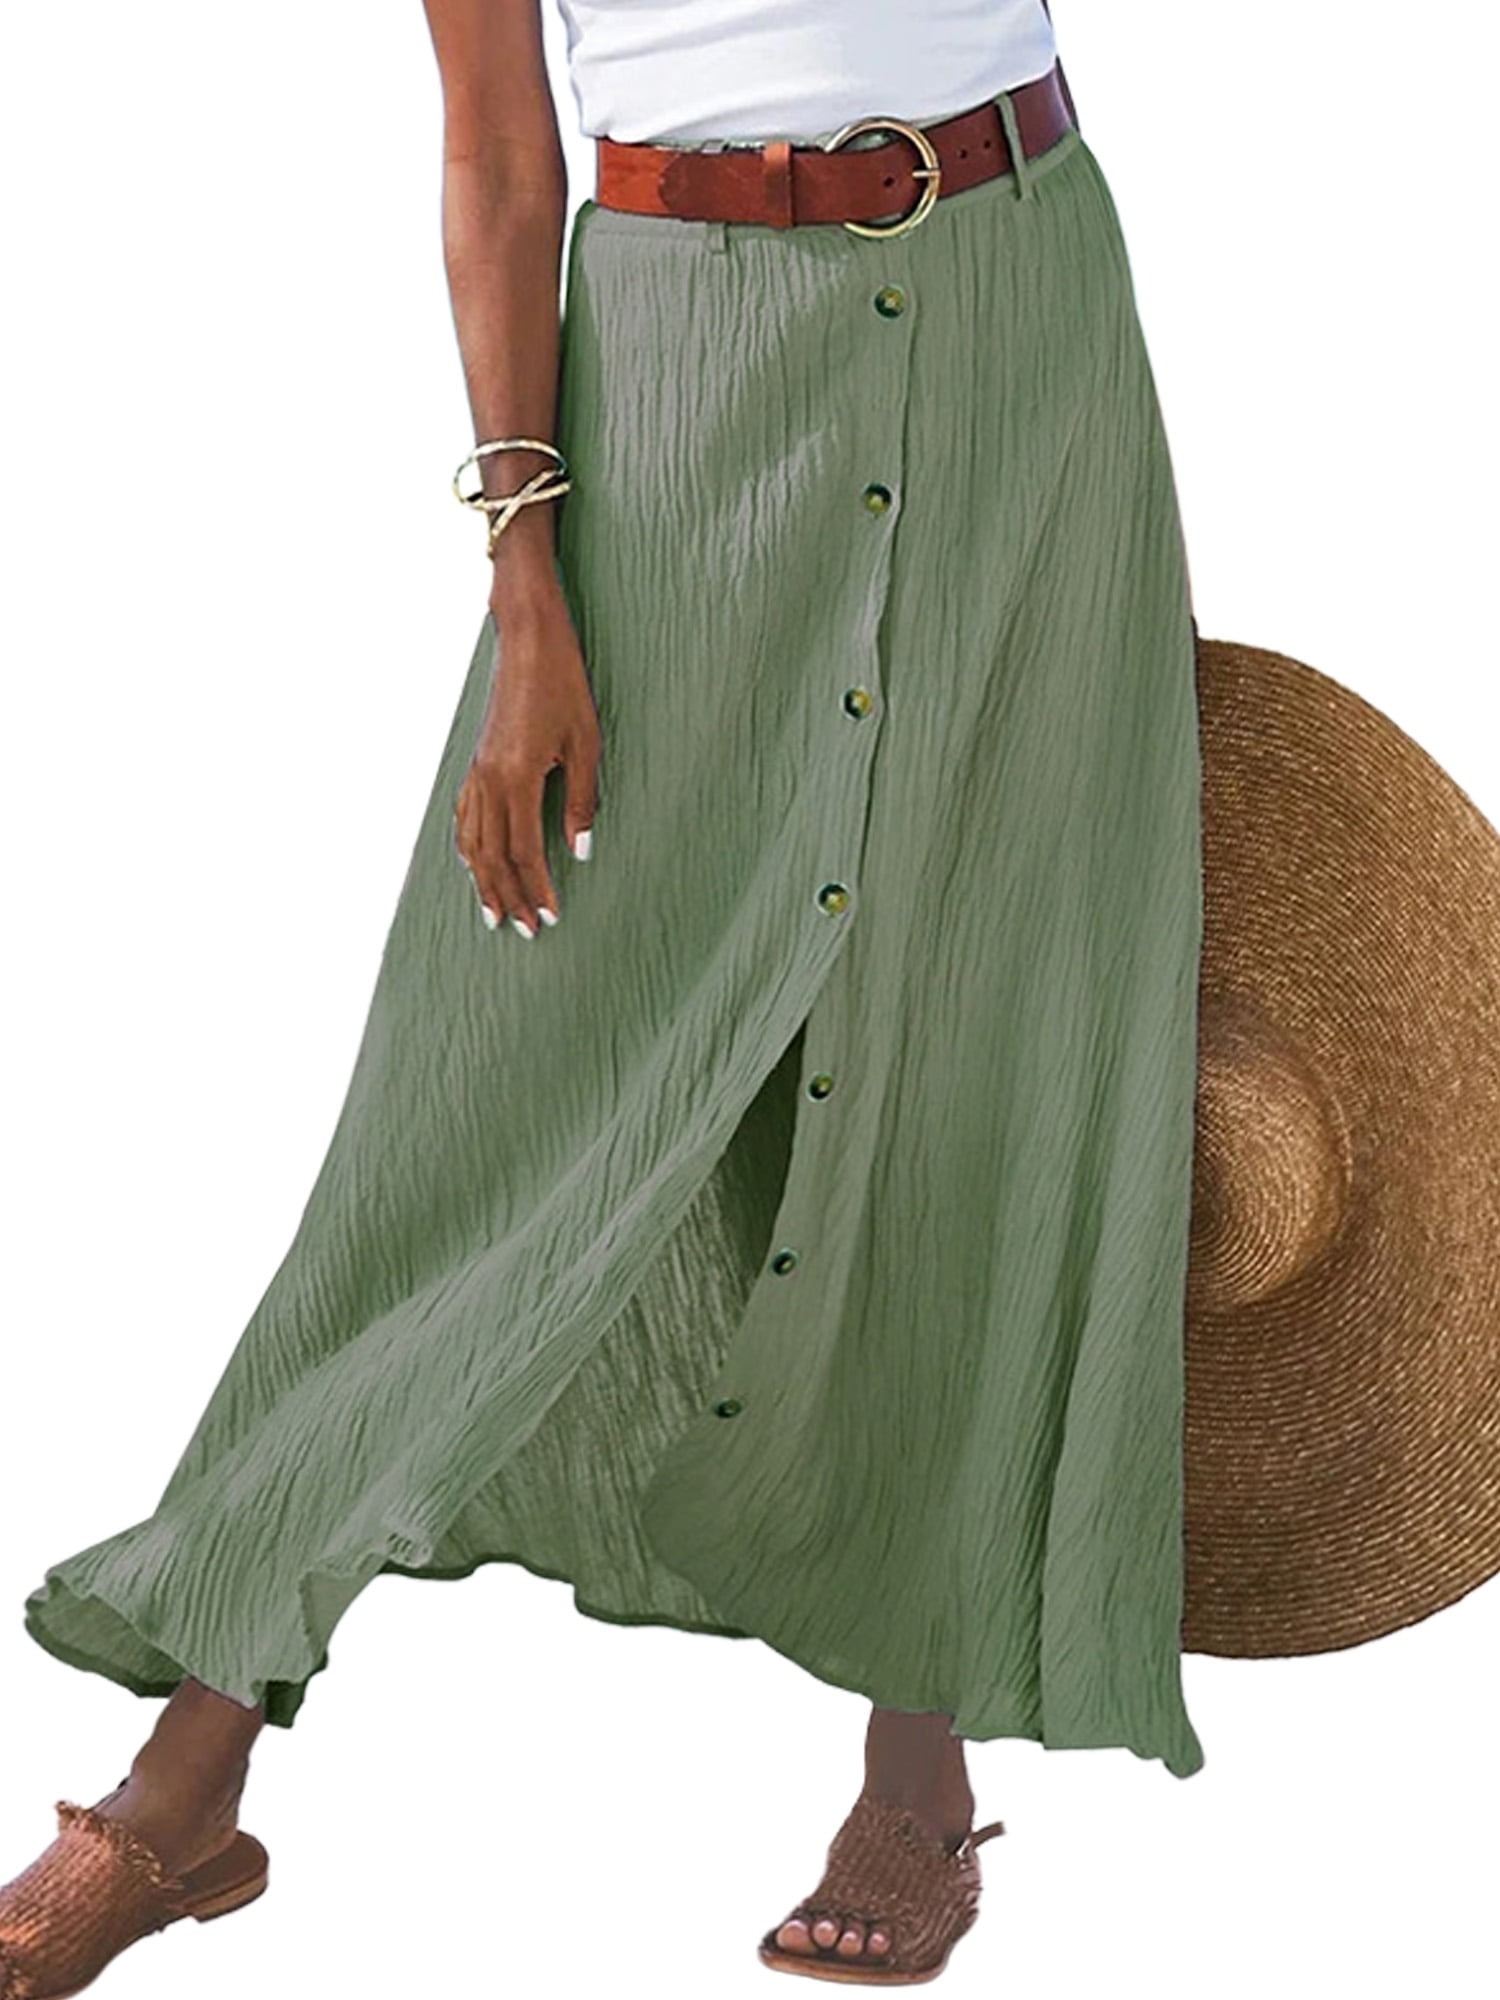 Rejlun Women Boho Long Skirts Cotton Linen Summer Beach Slit Skirt ...